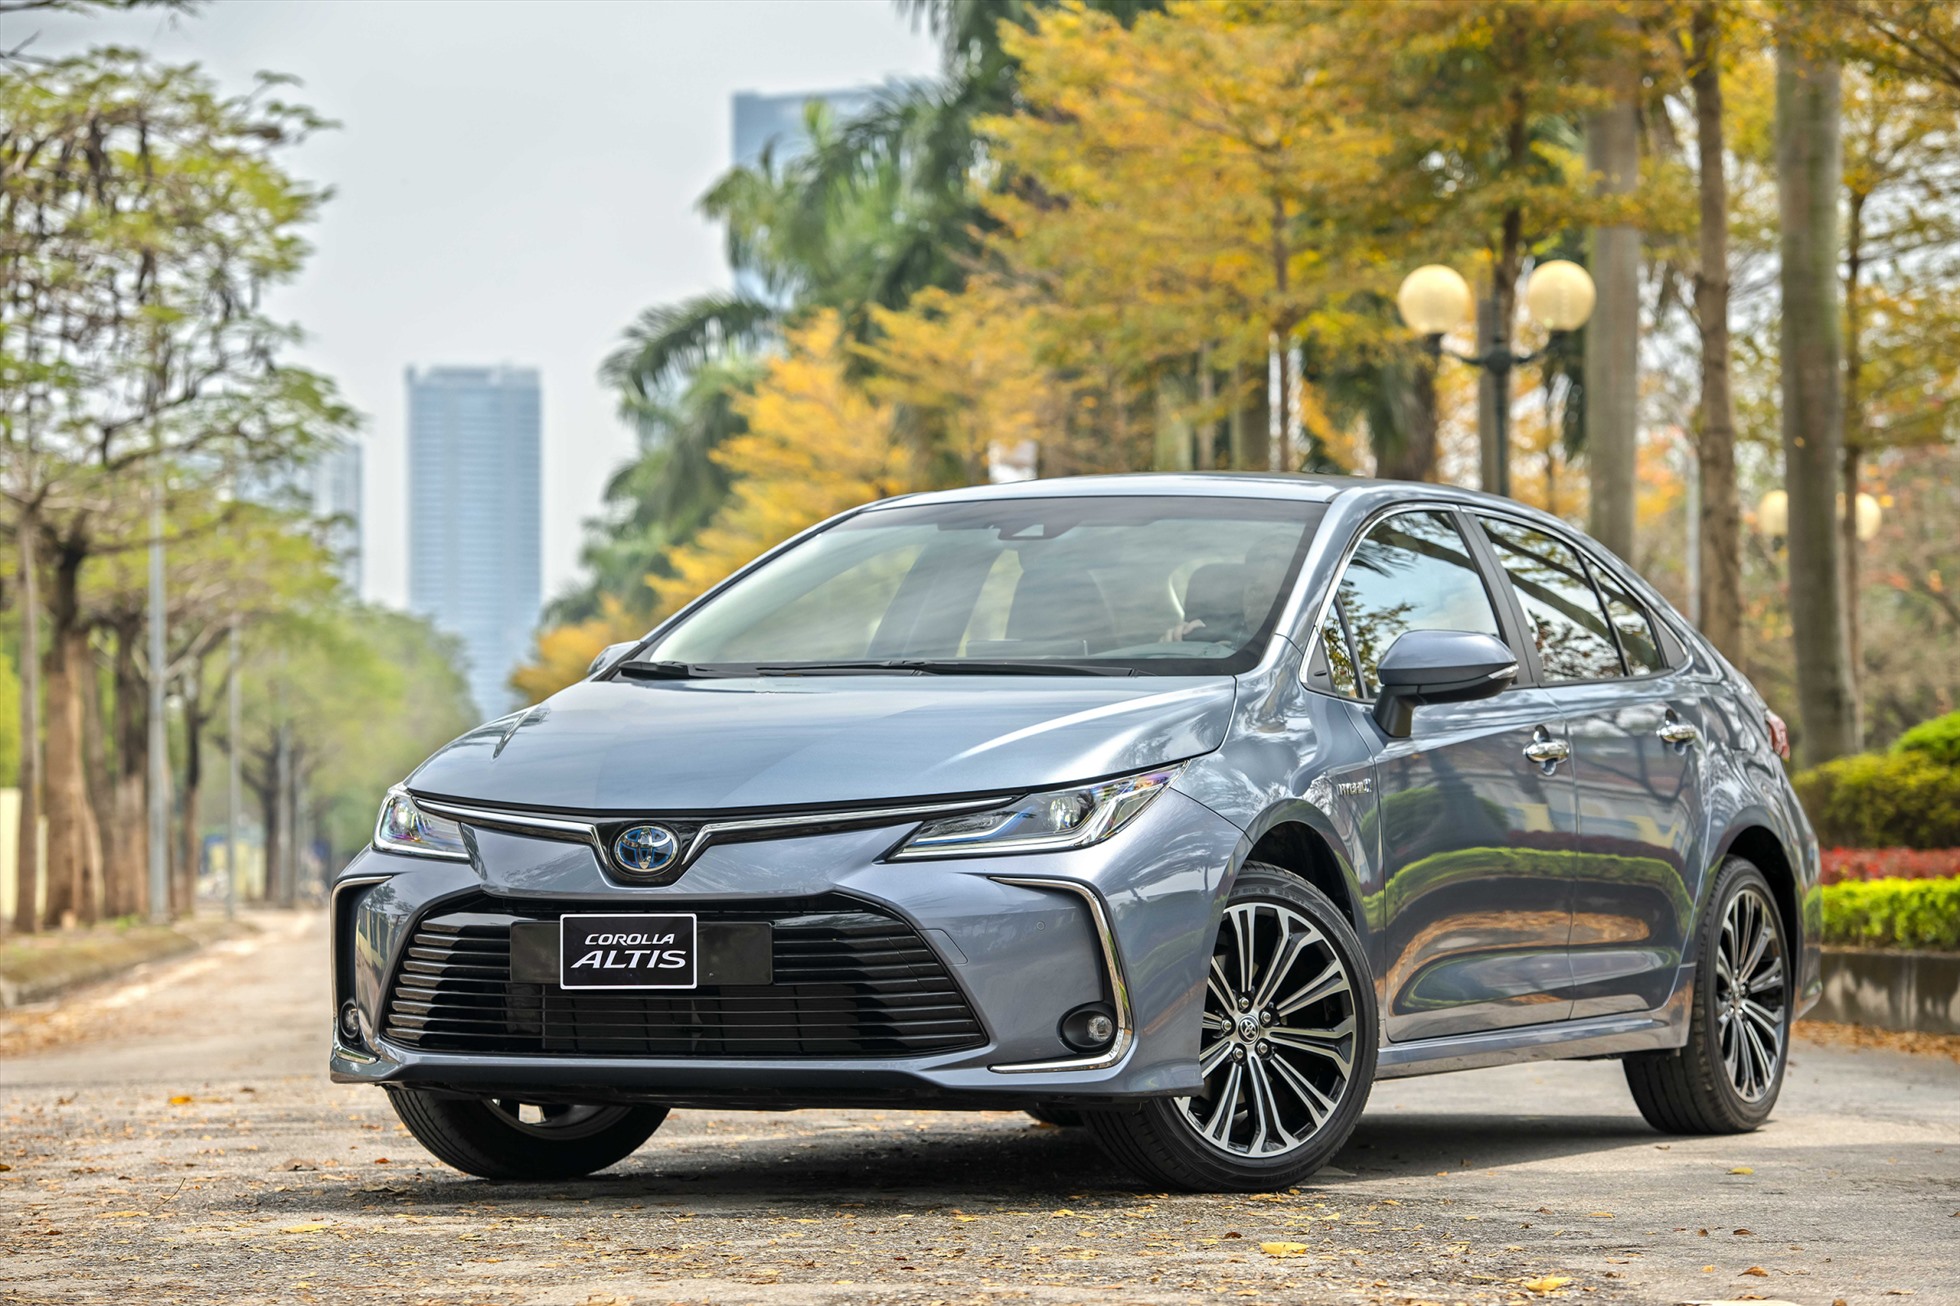 Mẫu xe Toyota Corolla Altis đang được giảm giá mạnh đối với phiên bản sản xuất năm 2022. Mức giảm lên tới 50 triệu đồng cho các phiên bản cùng các phần quà tặng thêm là phụ kiện. Sau giảm giá, Toyota Corolla Altis có giá chỉ còn từ 669-810 triệu đồng. Phiên bản sản xuất năm 2023 sẽ ưu đãi ít hơn. Phiên bản 1.8HV công nghệ hybrid không được giảm giá, chỉ được tặng kèm phụ kiện. Trong khi đó, 2 bản 1.8G và 1.8V chỉ giảm giá 15 triệu đồng và tặng kèm phụ kiện. Ảnh: Toyota Việt Nam.